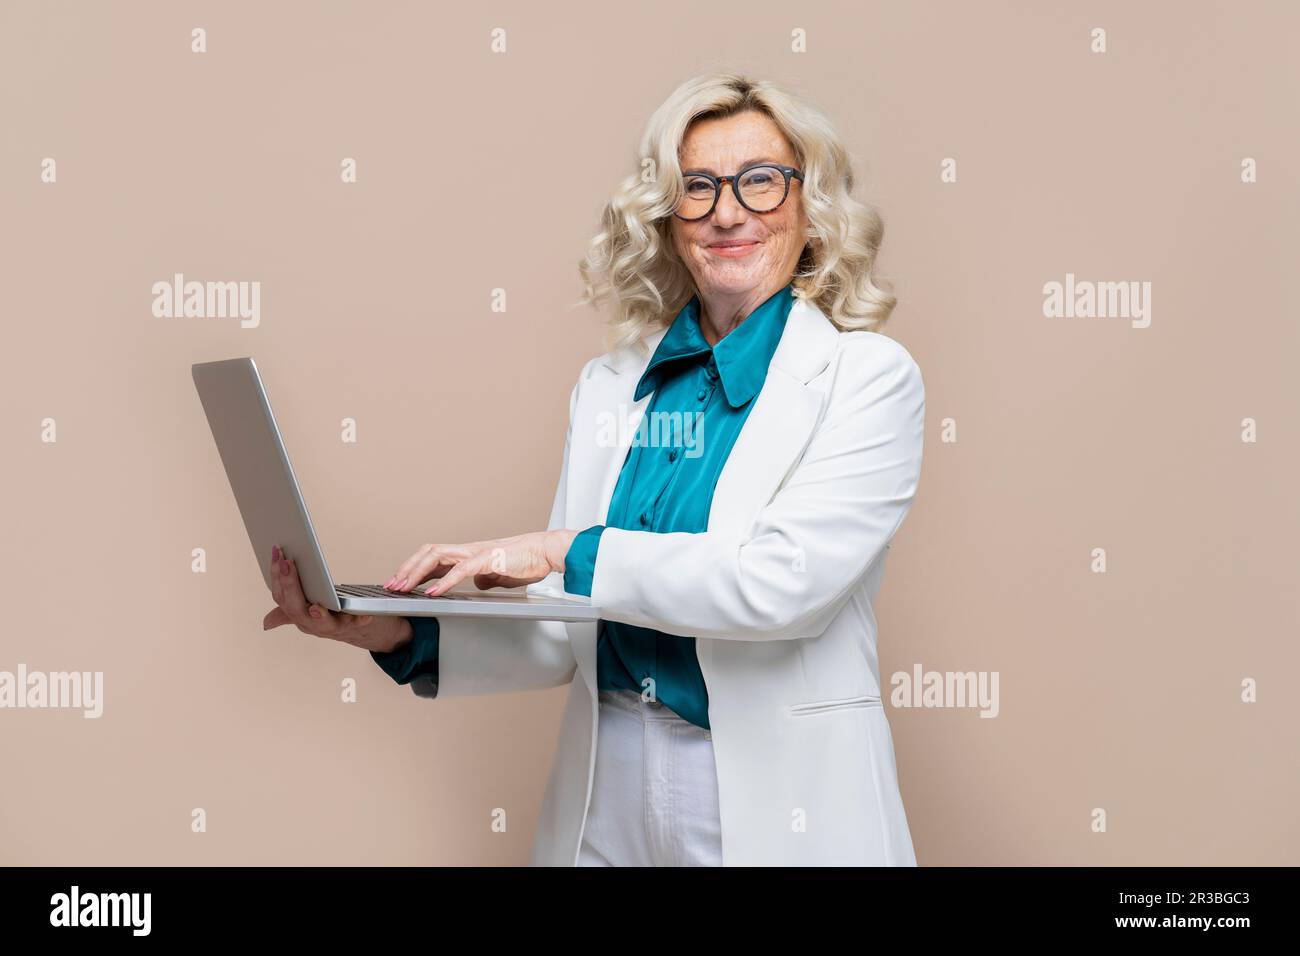 Lächelnde ältere Geschäftsfrau, die den Laptop vor einem farbigen Hintergrund hält Stockfoto